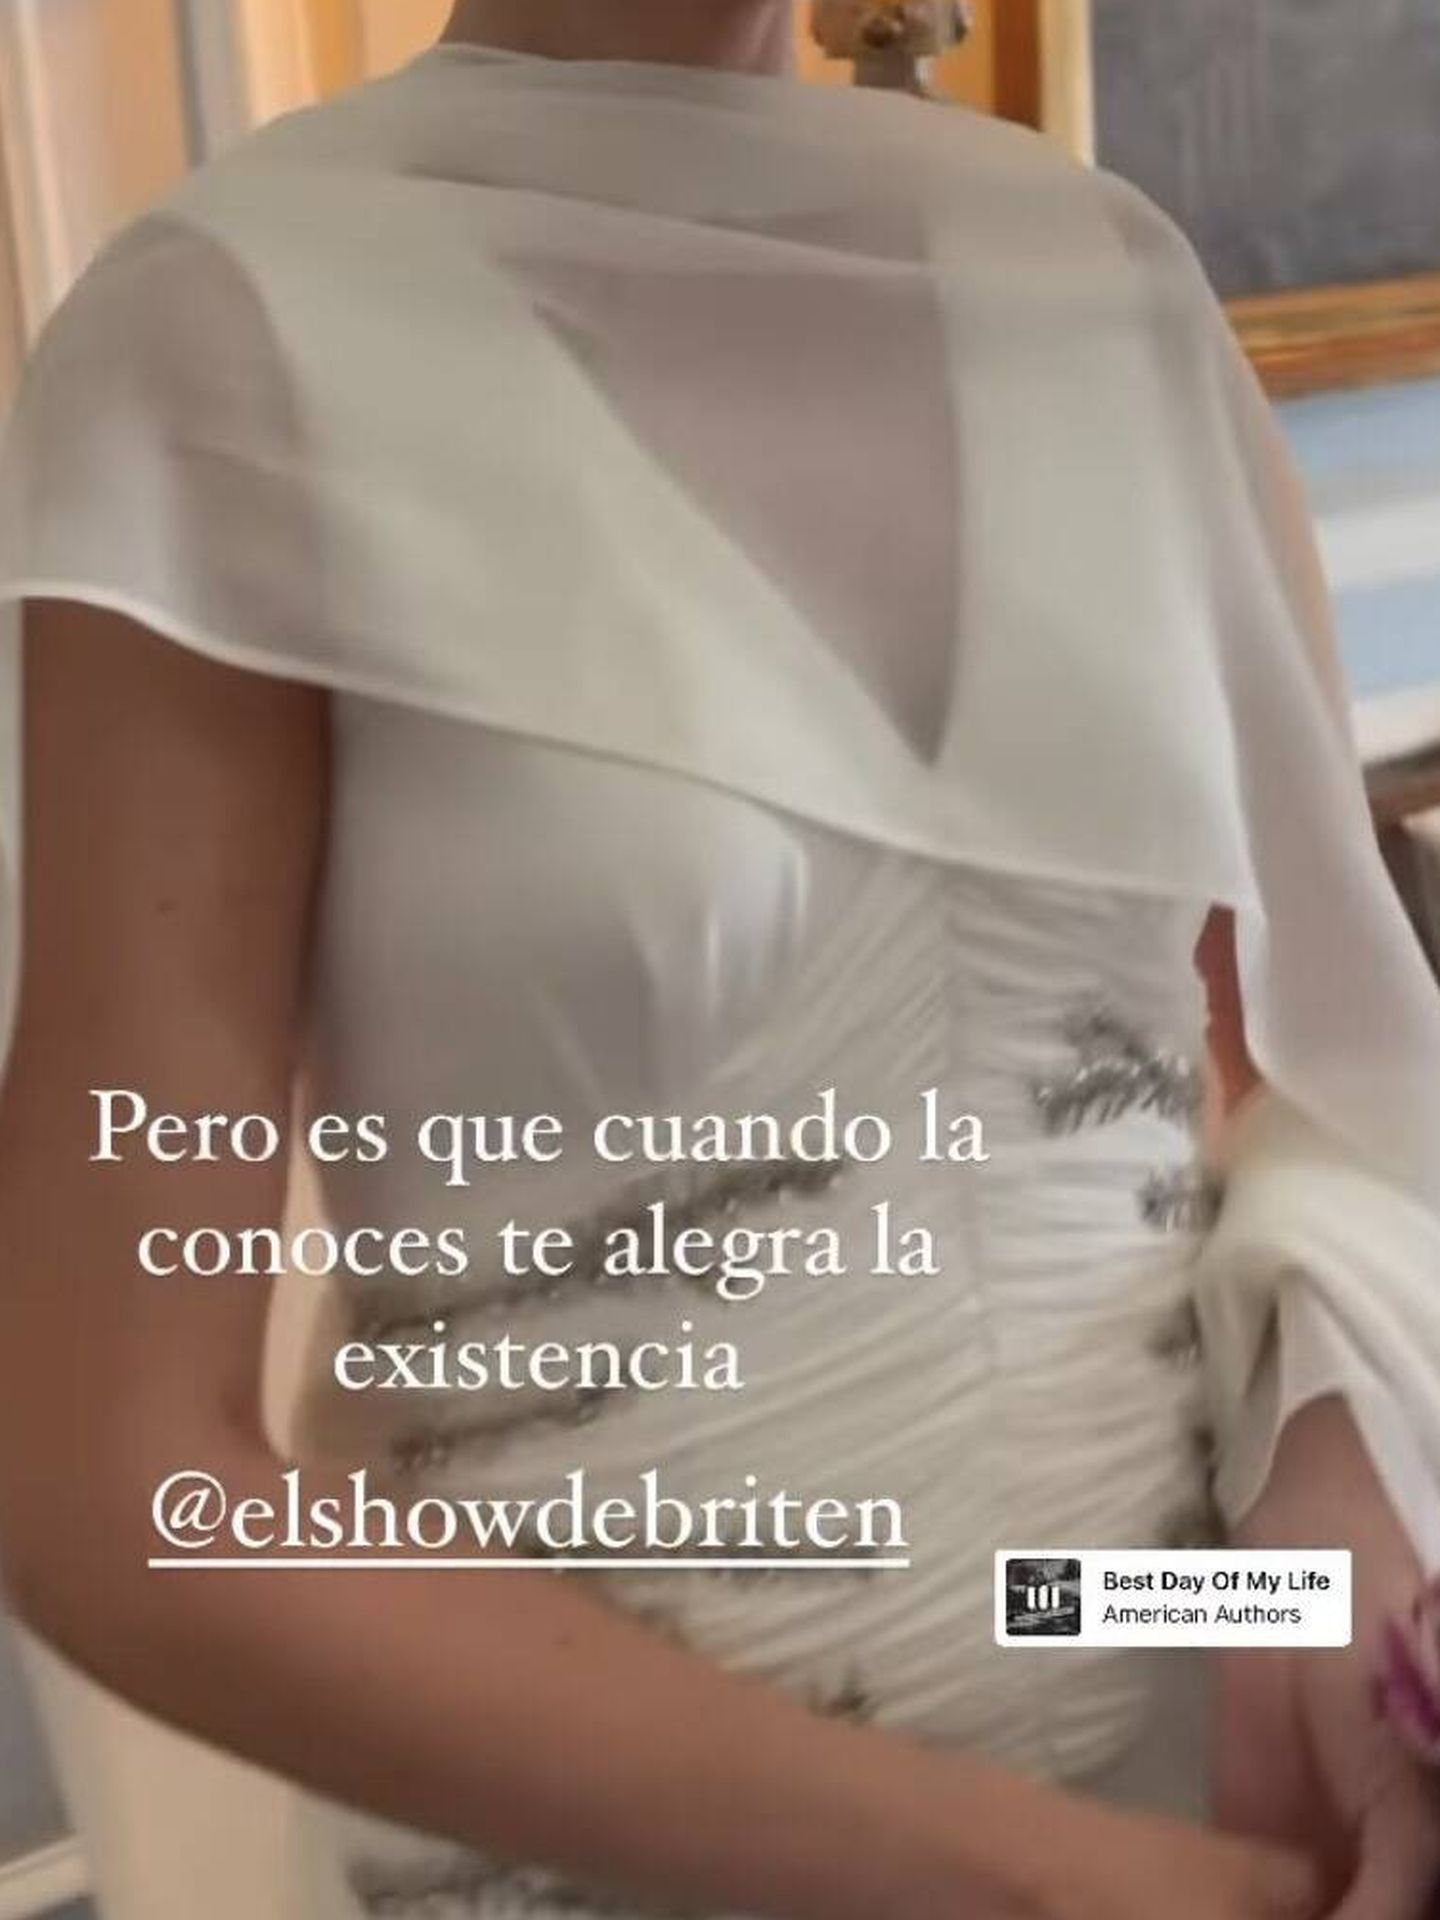 Detalle del vestido de novia de la cómica Ana Brito. (Instagram/@sofiadelgadostudio)